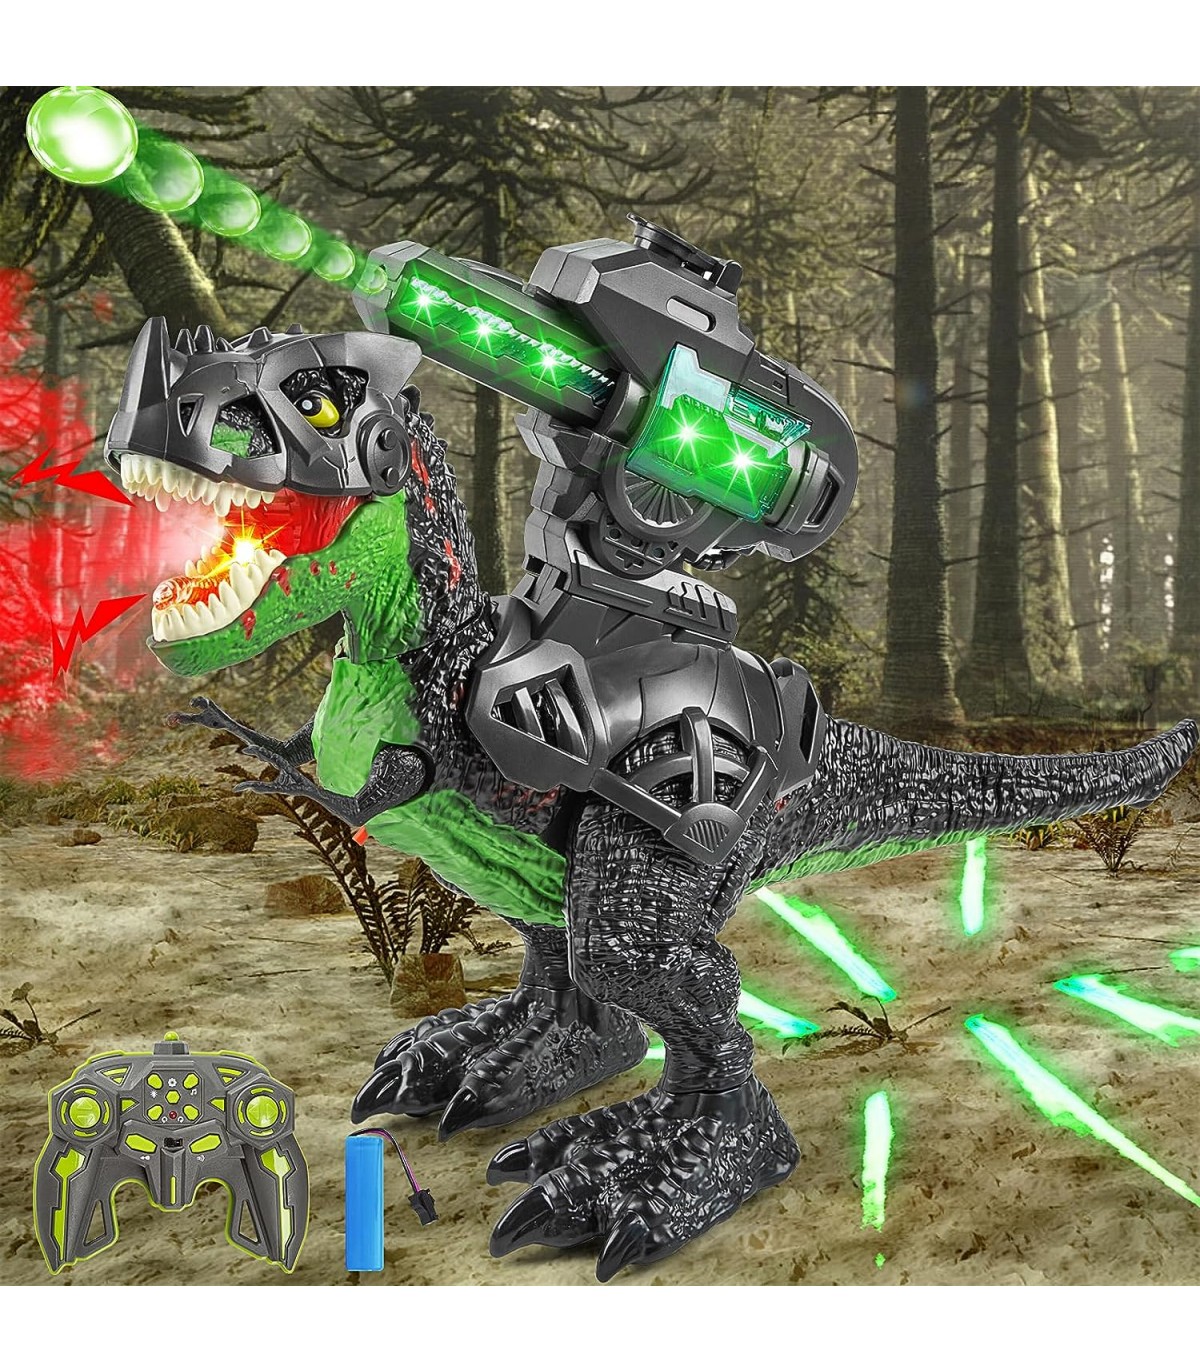 Dinossauro Robô Interativo Programável com Controle Remoto para